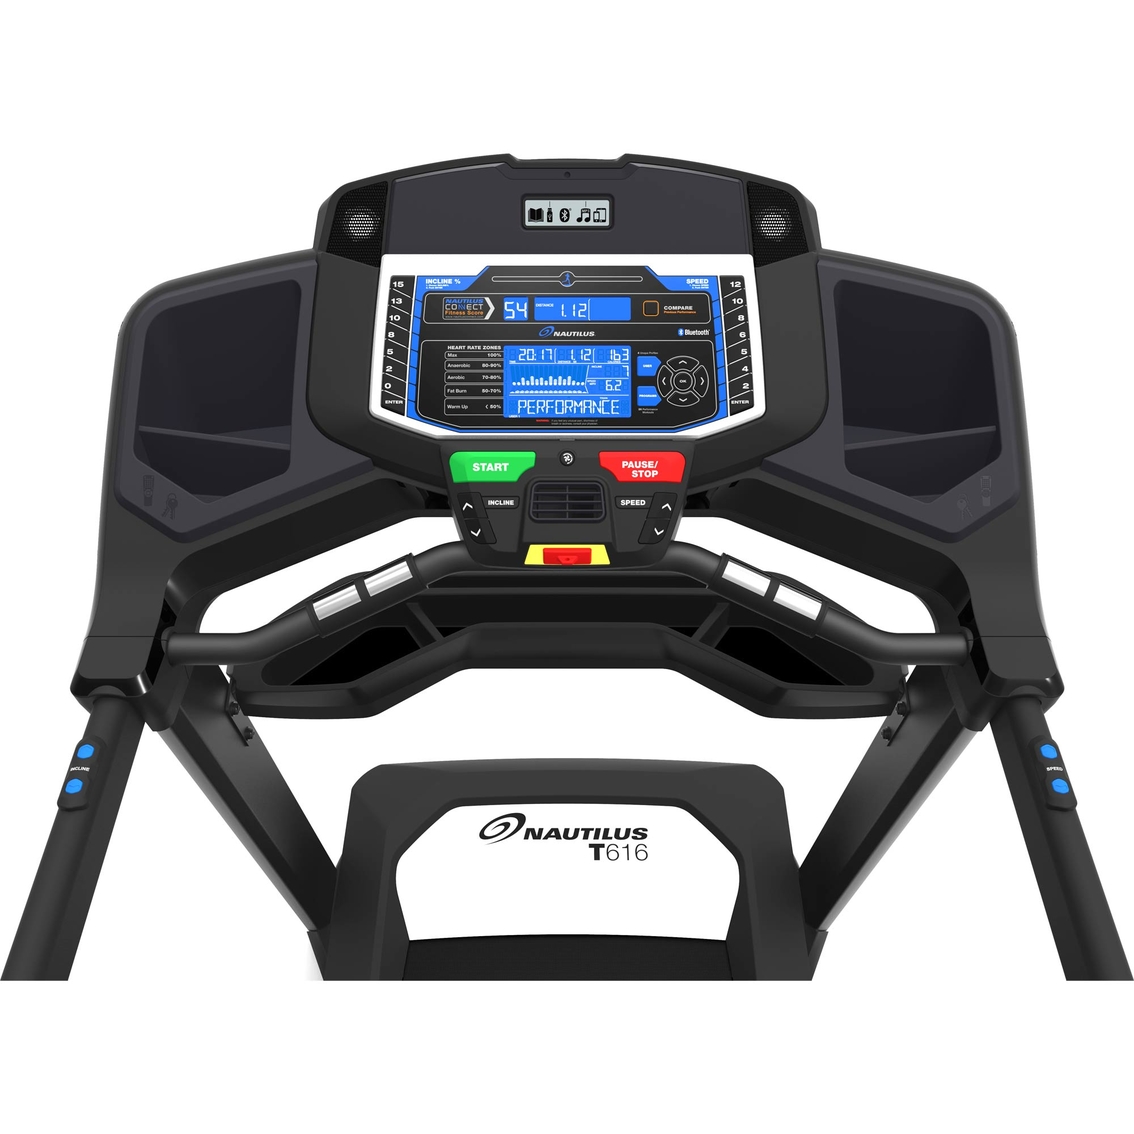 Nautilus T616 Treadmill - Image 2 of 4